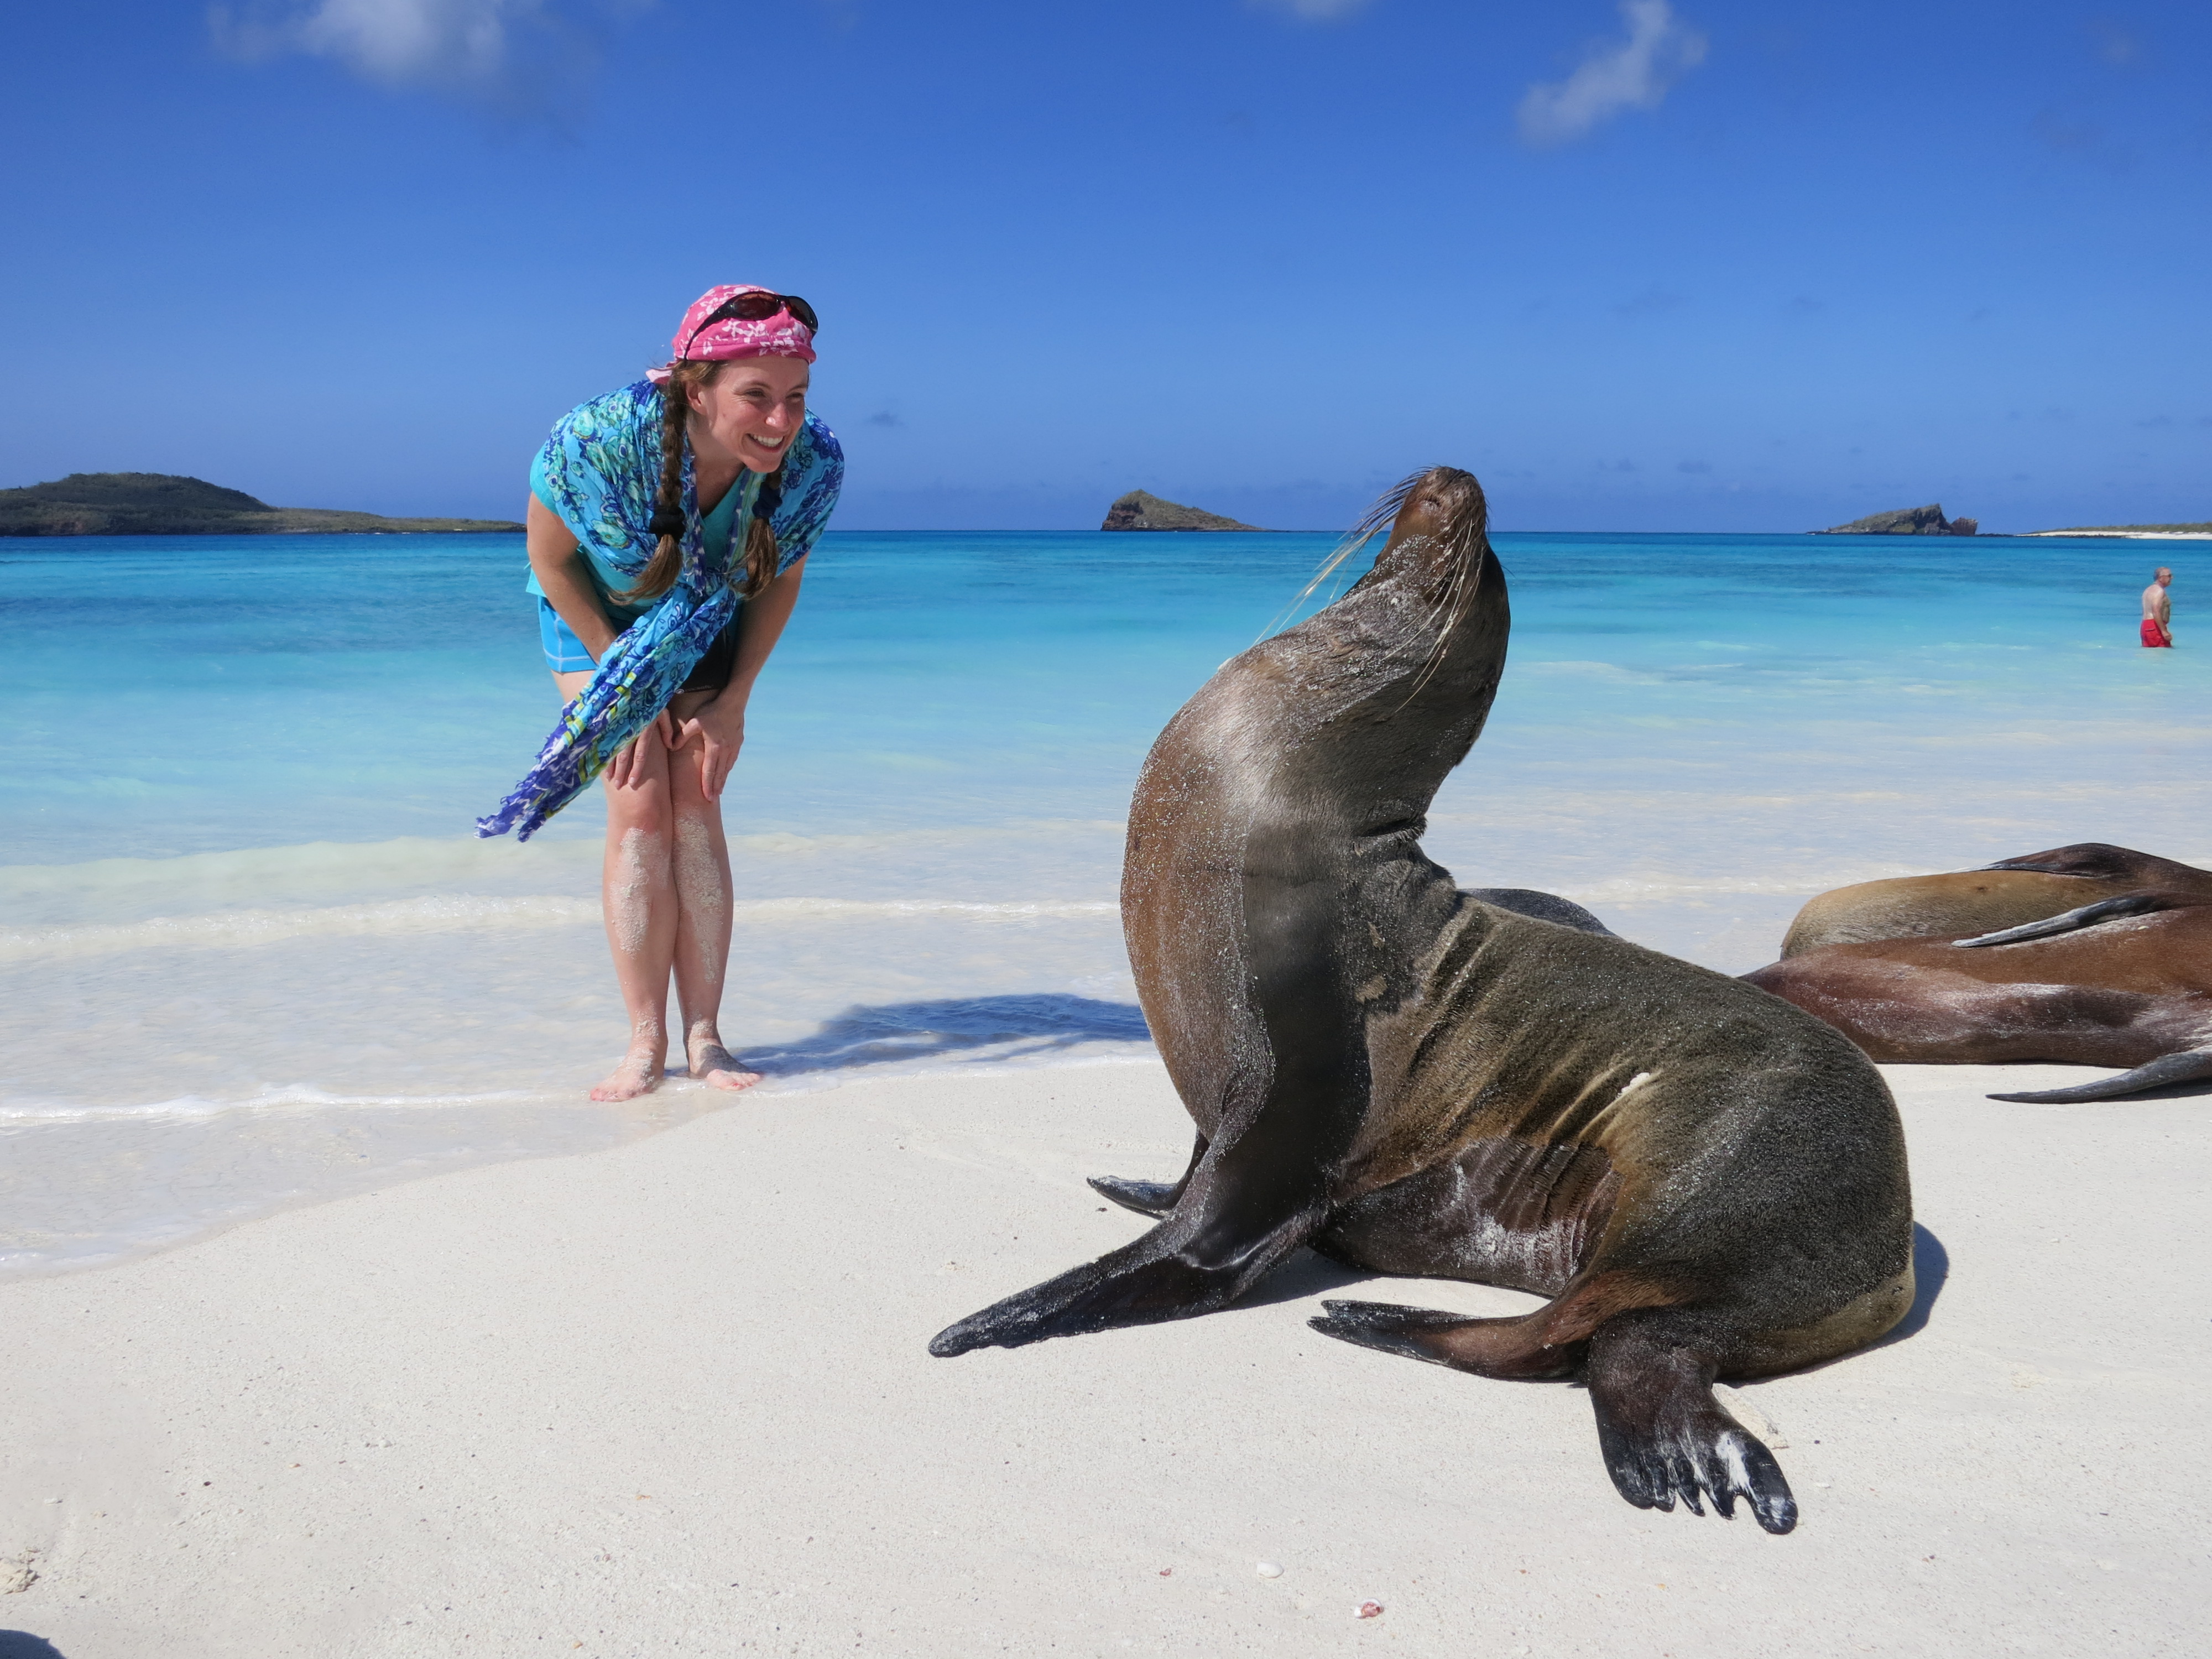 Vacaciones en Galapagos 2019 desde GYE y QUITO